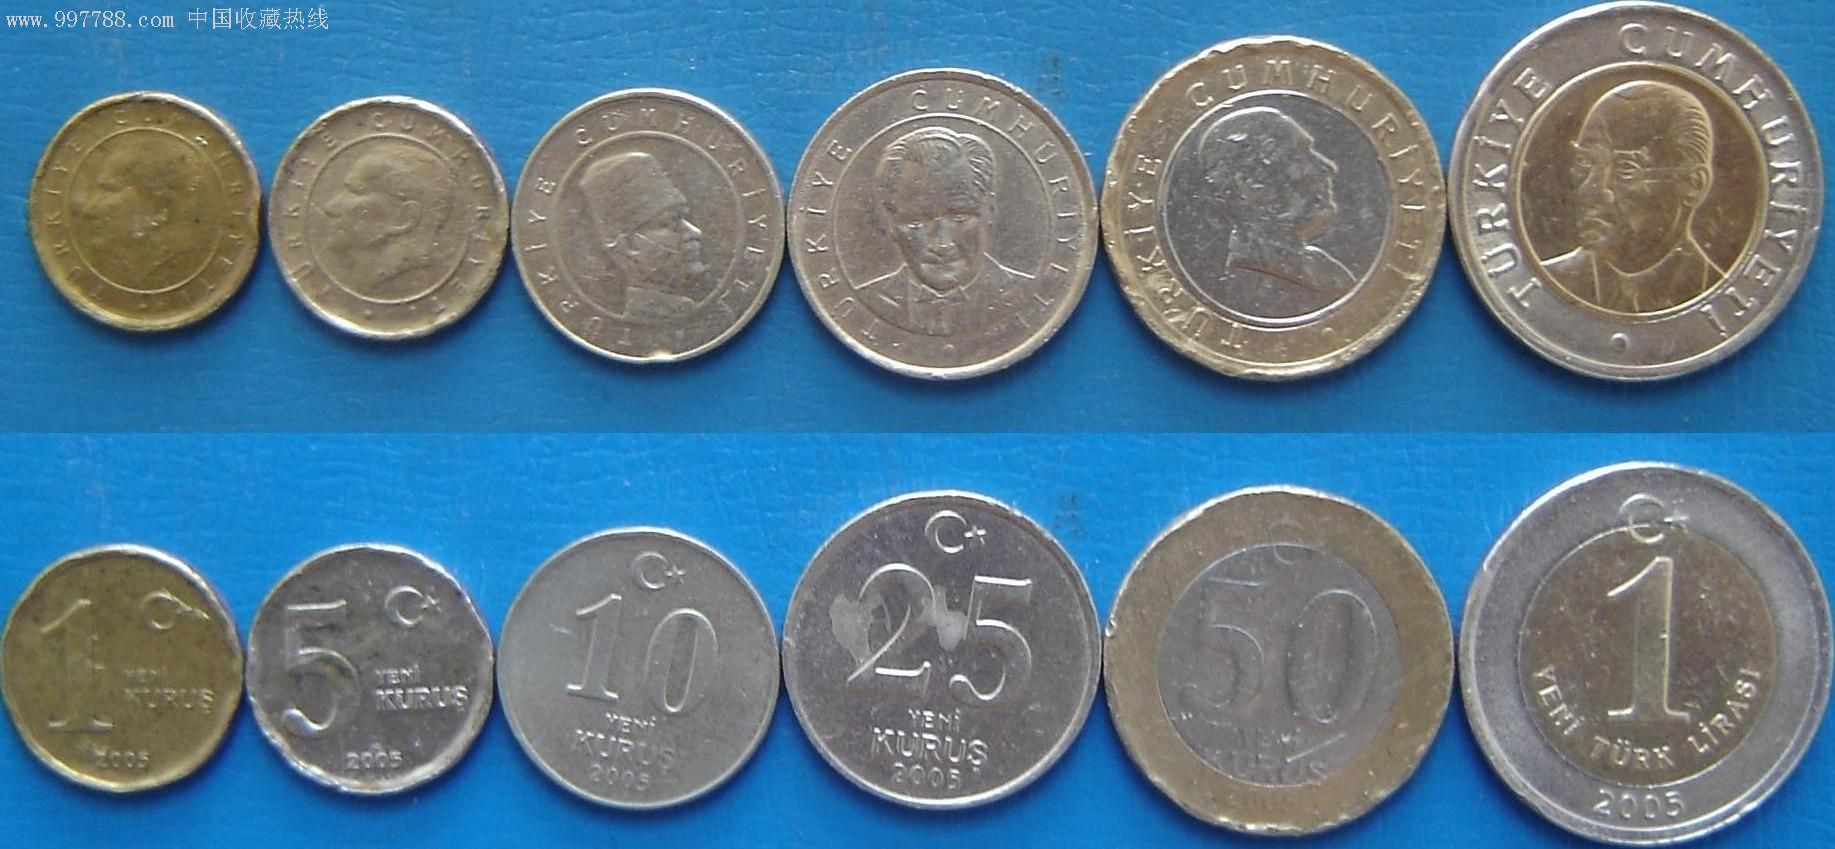 [乐藏阁]土耳其2005同年号硬币从1库鲁到1里拉6枚套品差特价